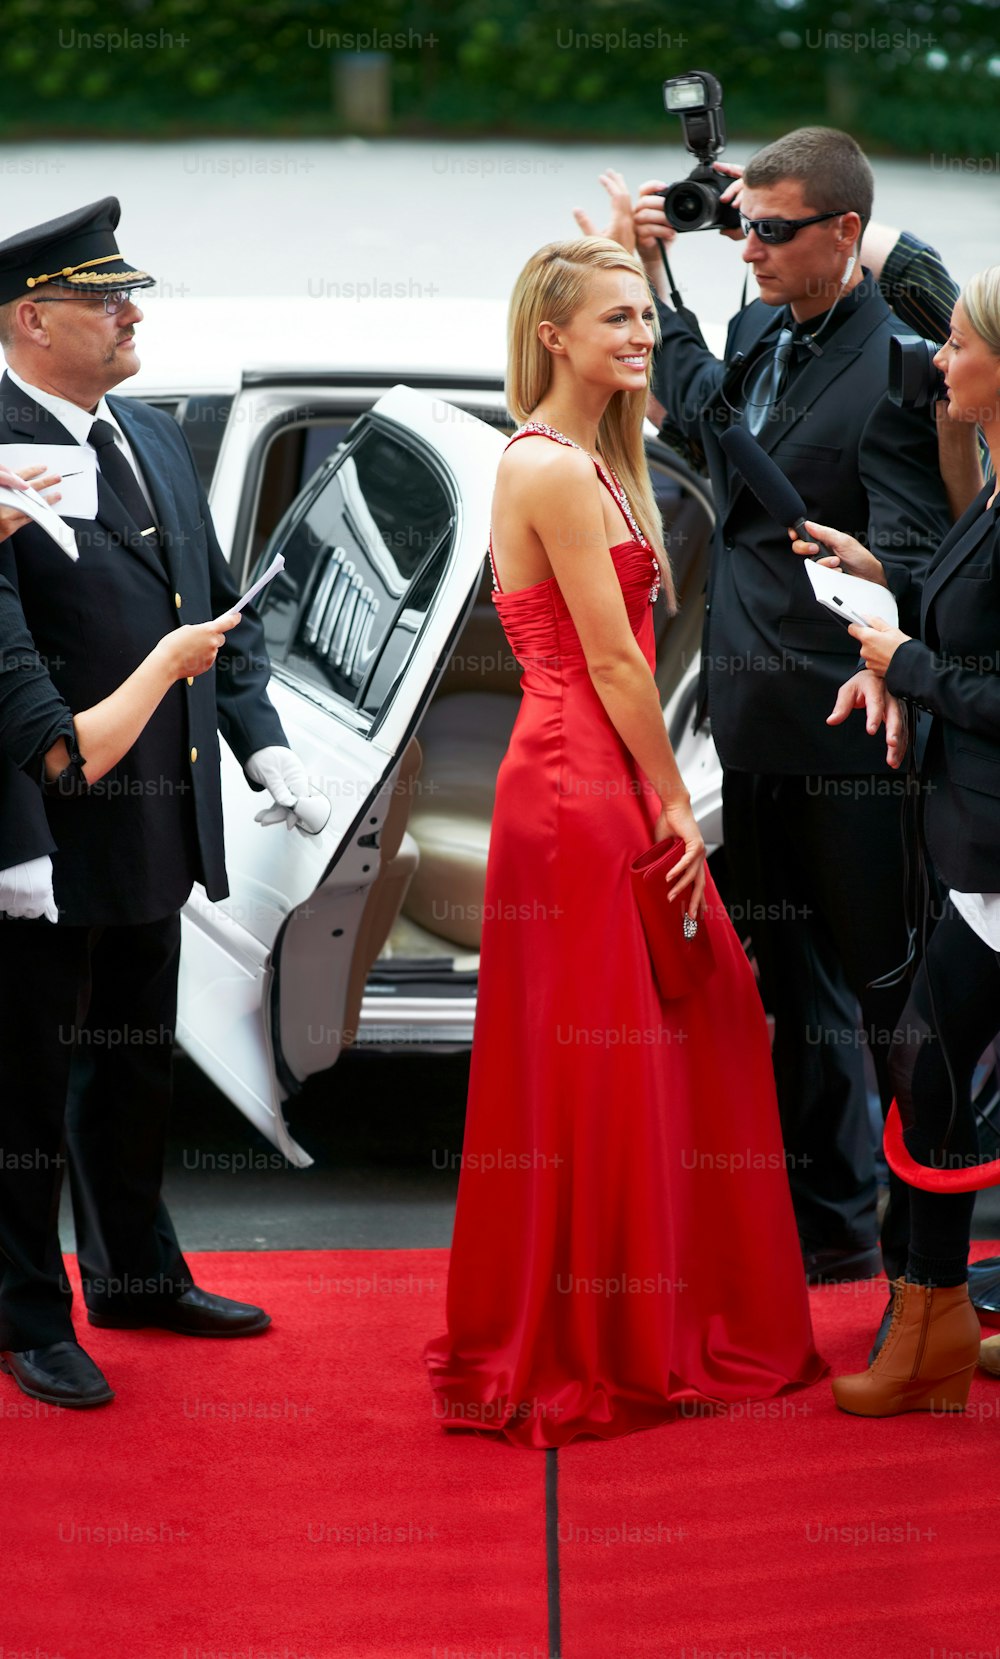 빨간 드레스를 입은 여자가 차 앞에 서 있다